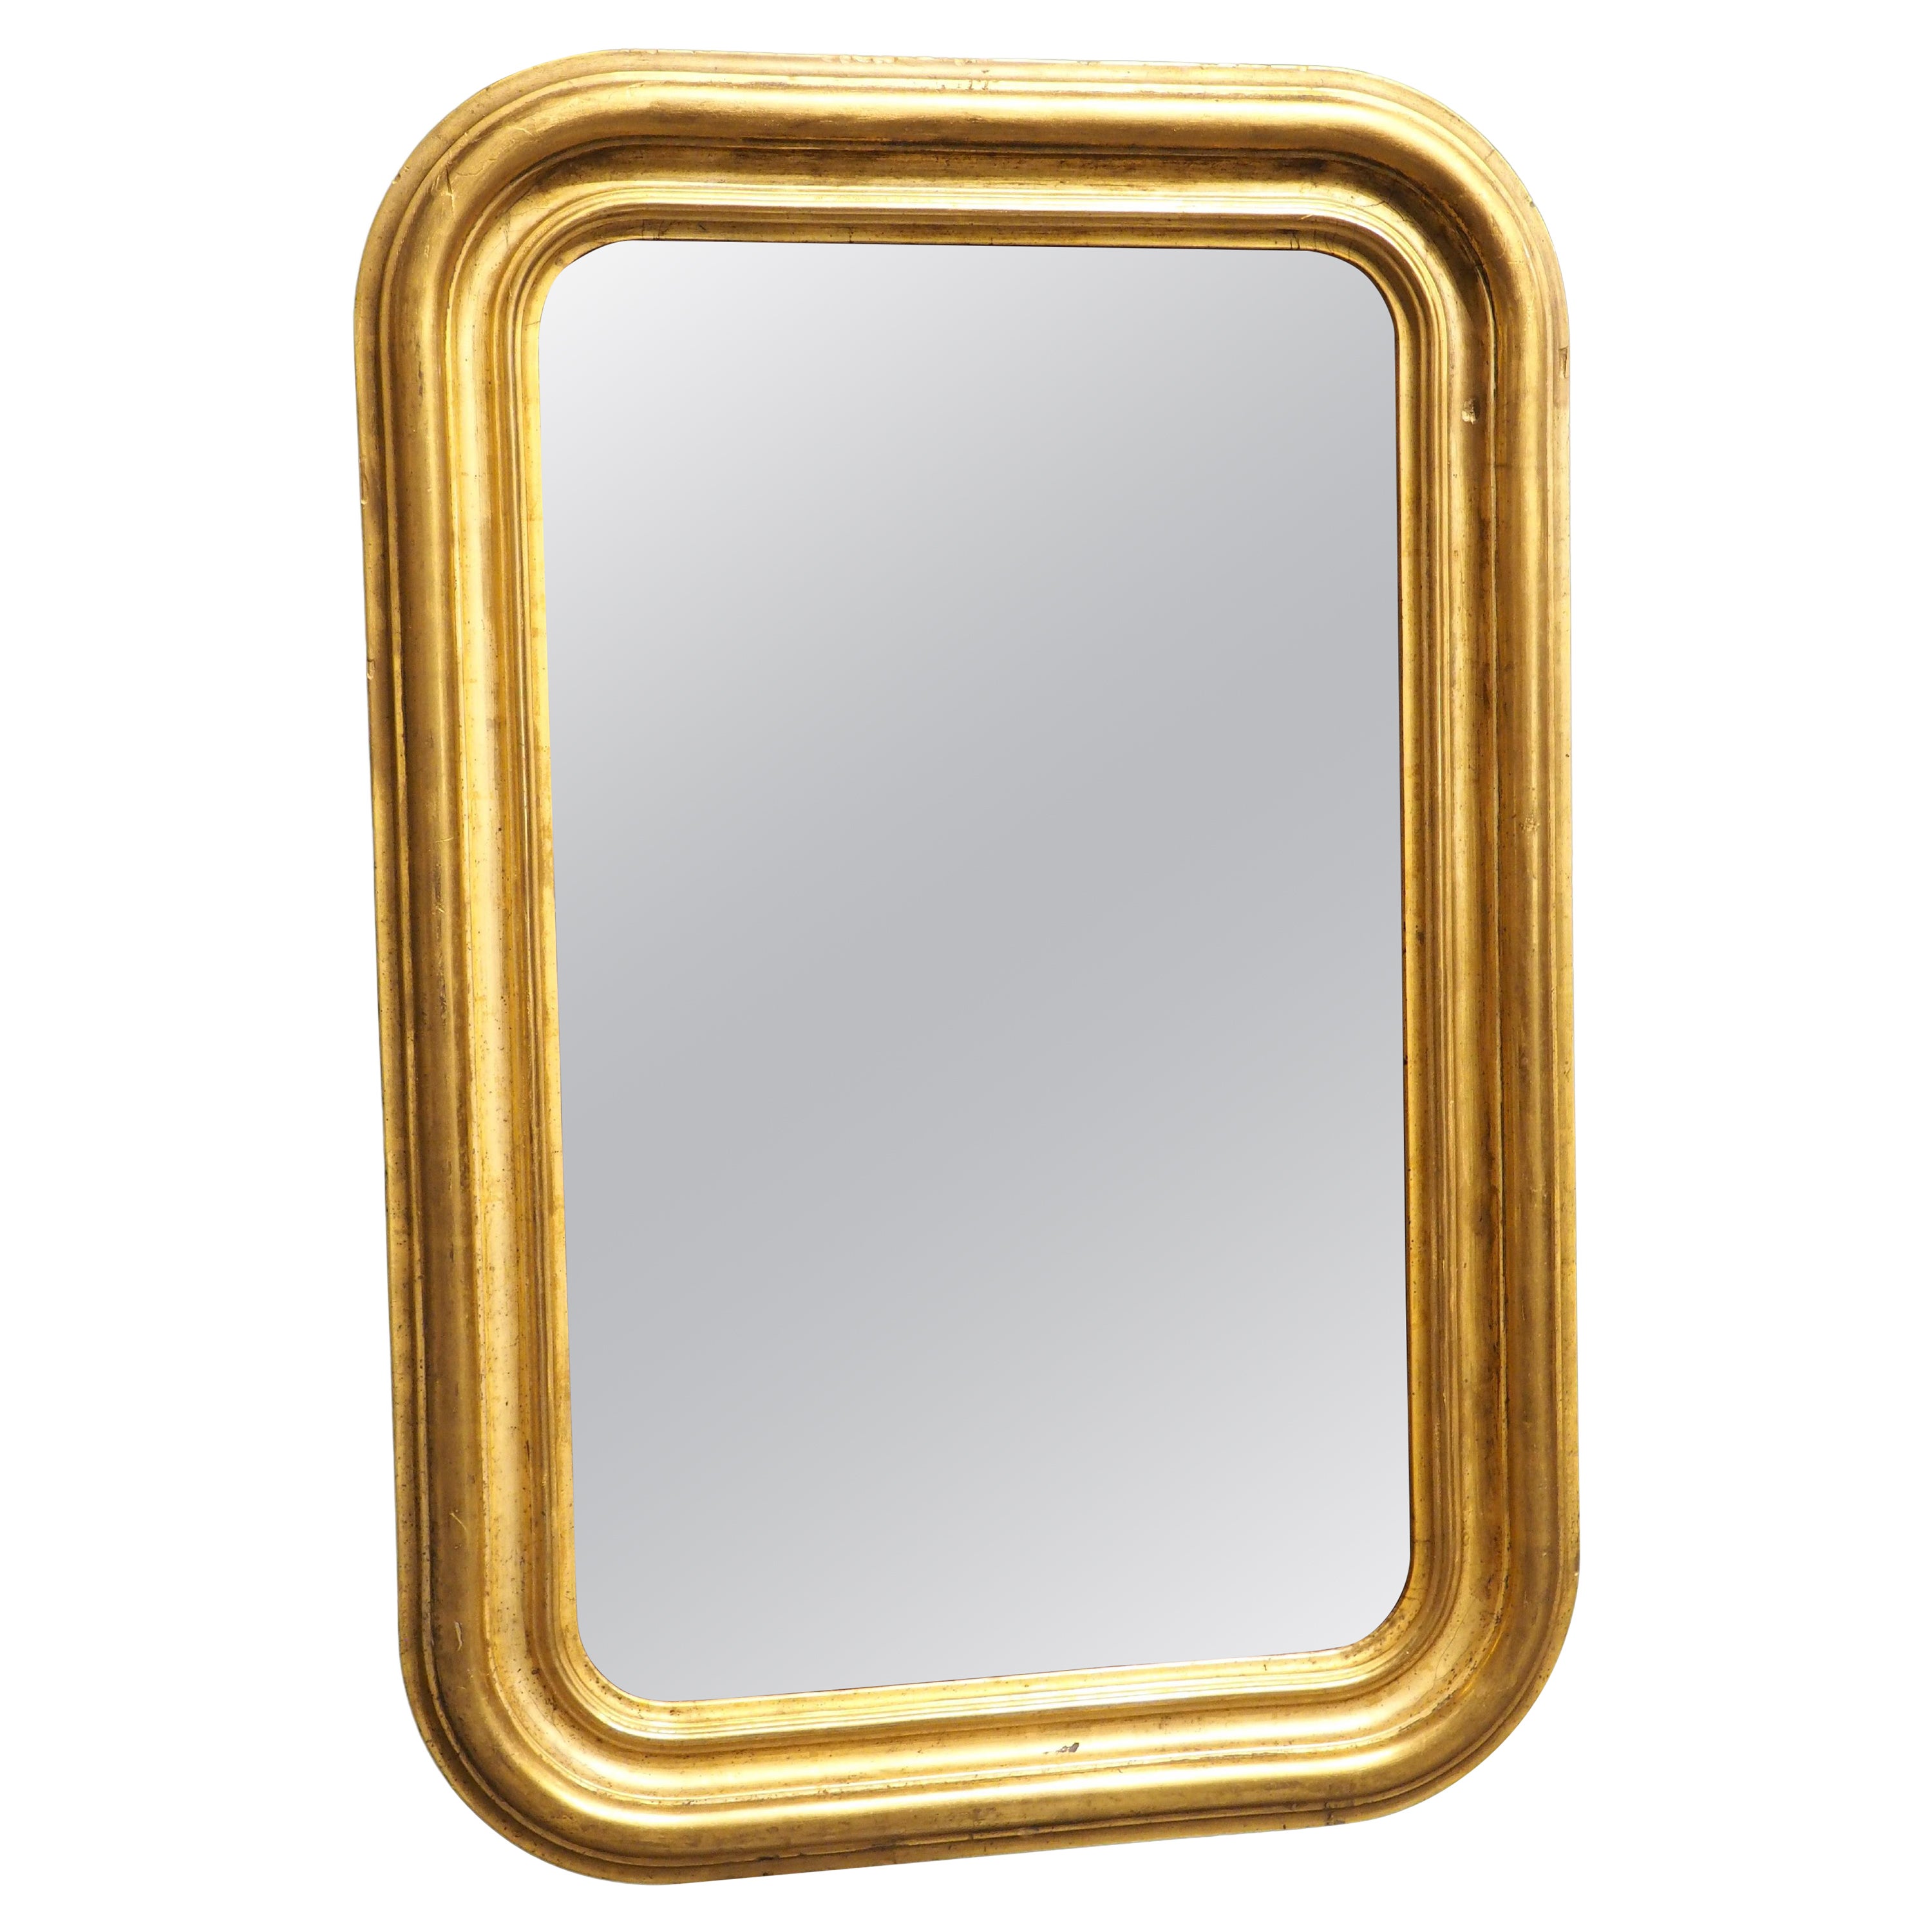 Antique Mirror Louis Philippe del 1850 circa, in legno dorato, proveniente dalla Francia